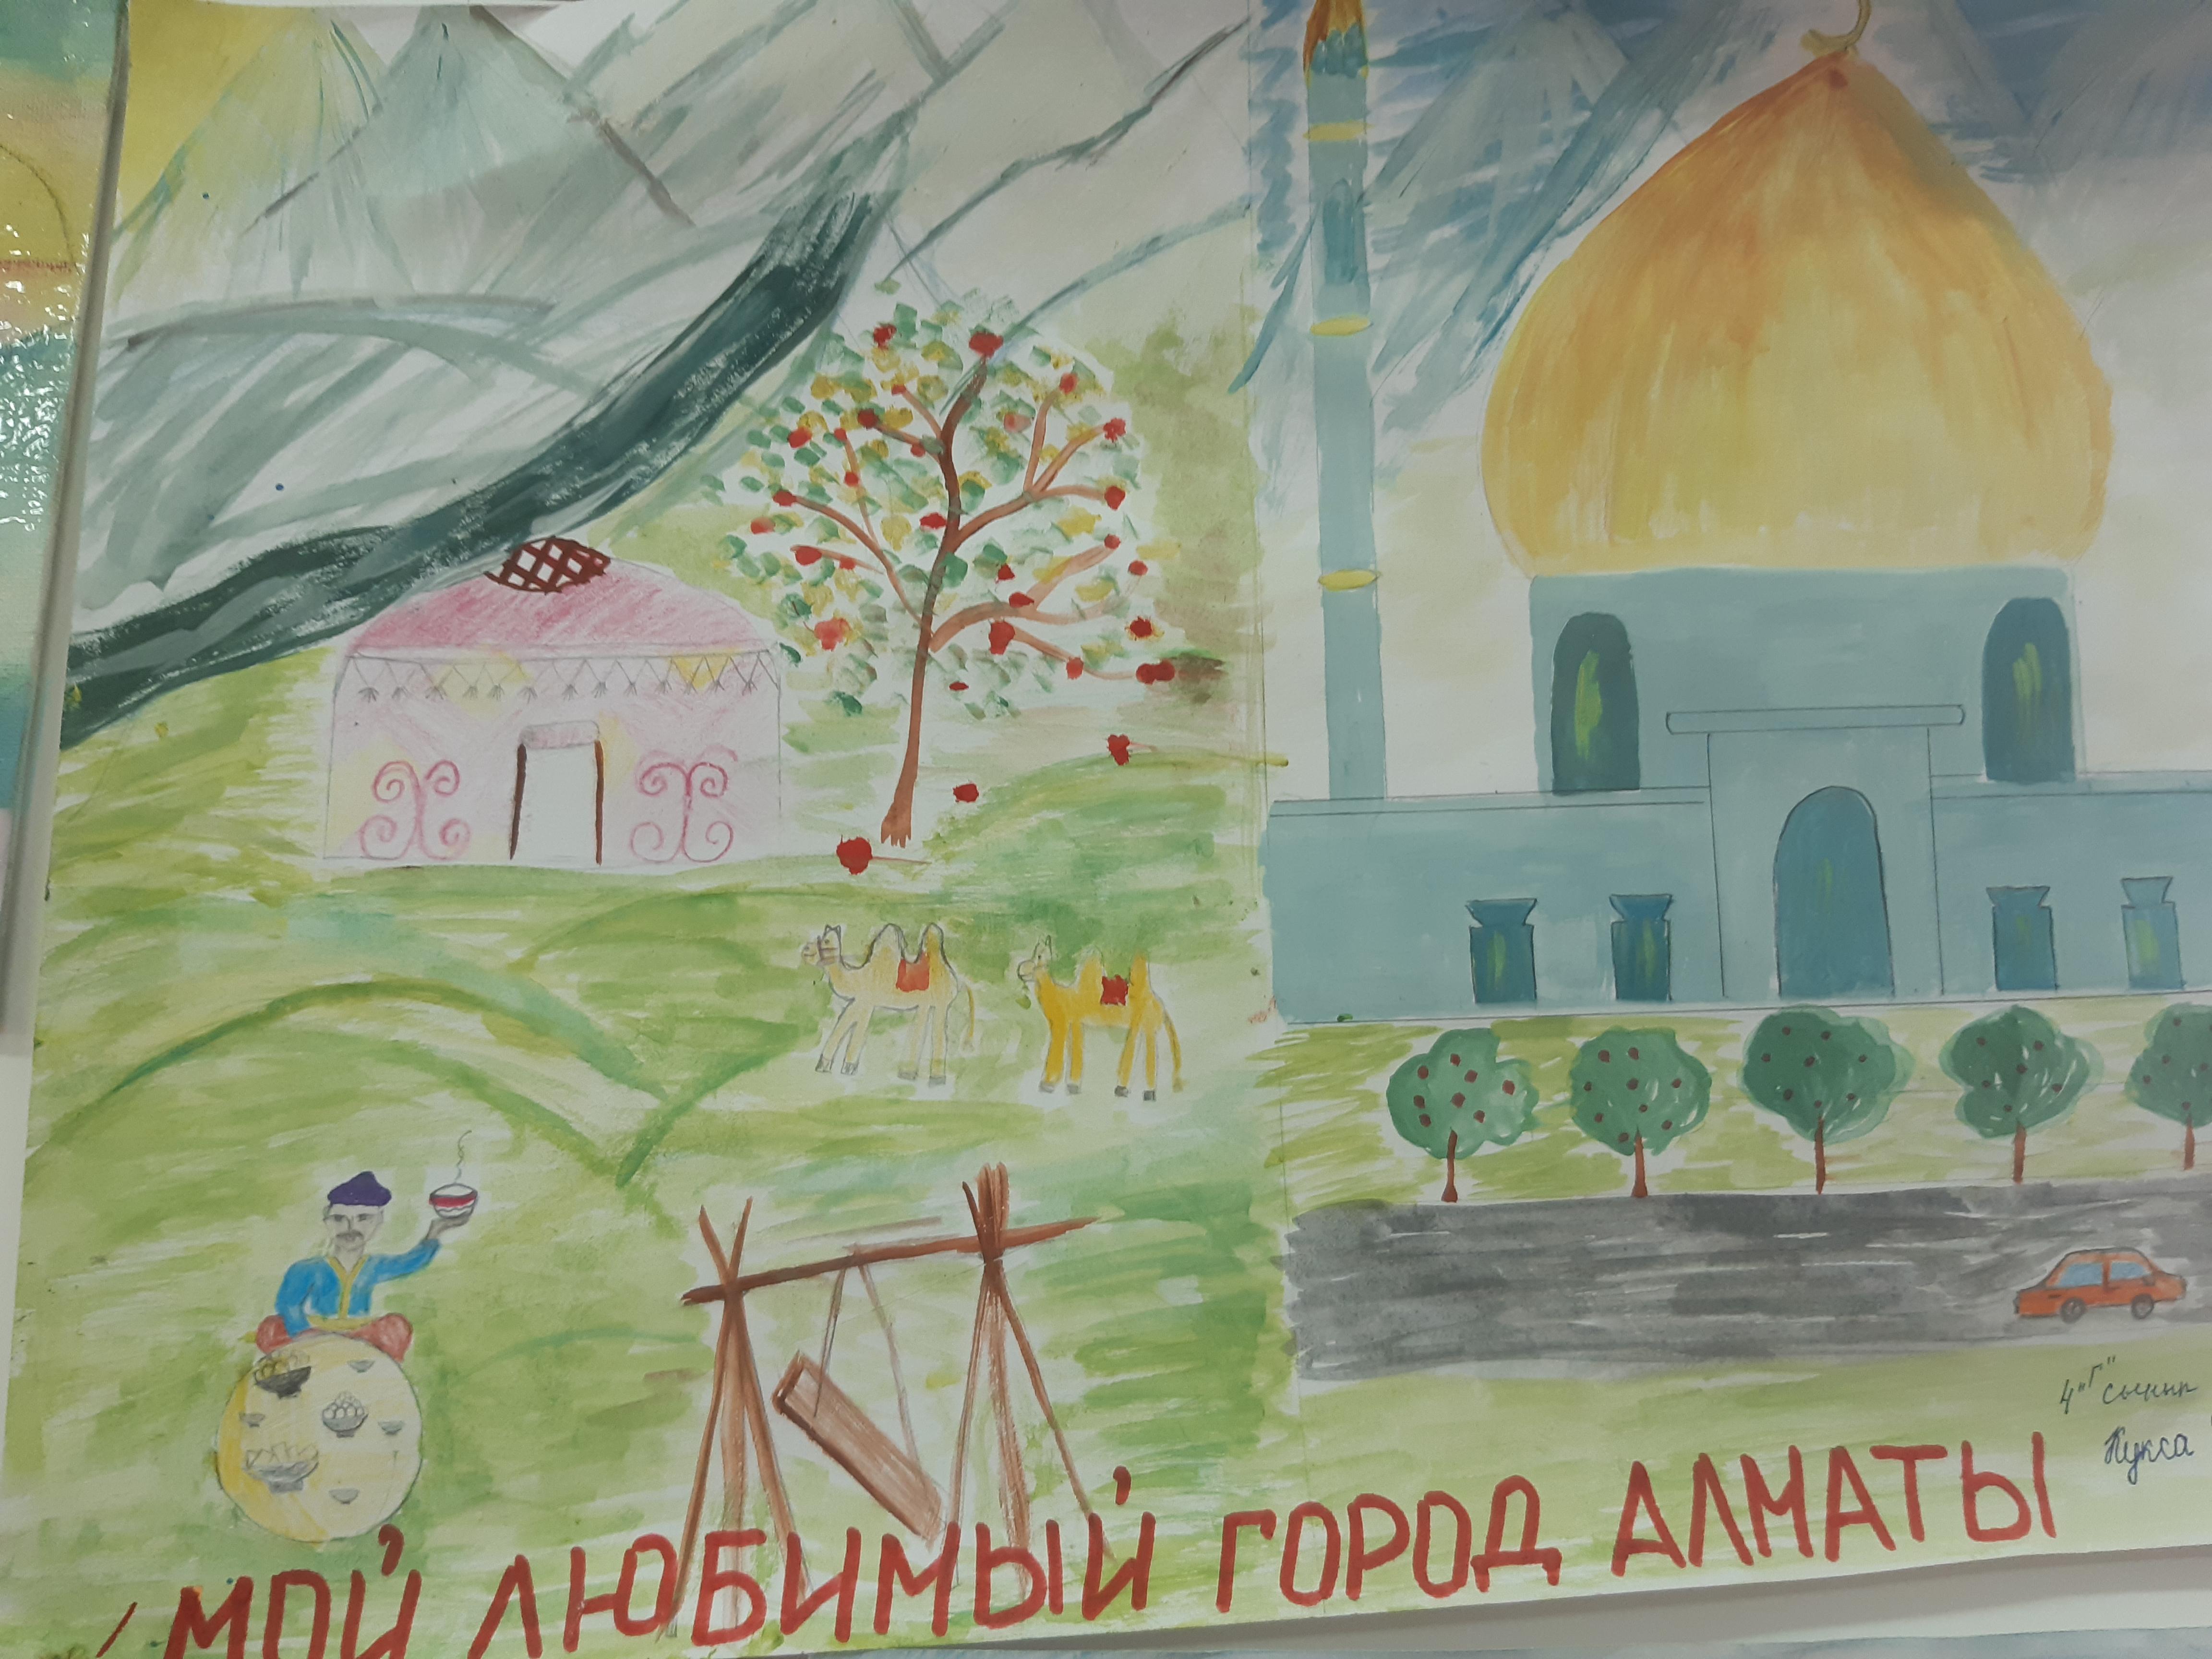 Конкурс рисунков "Мой любимый город Алматы"